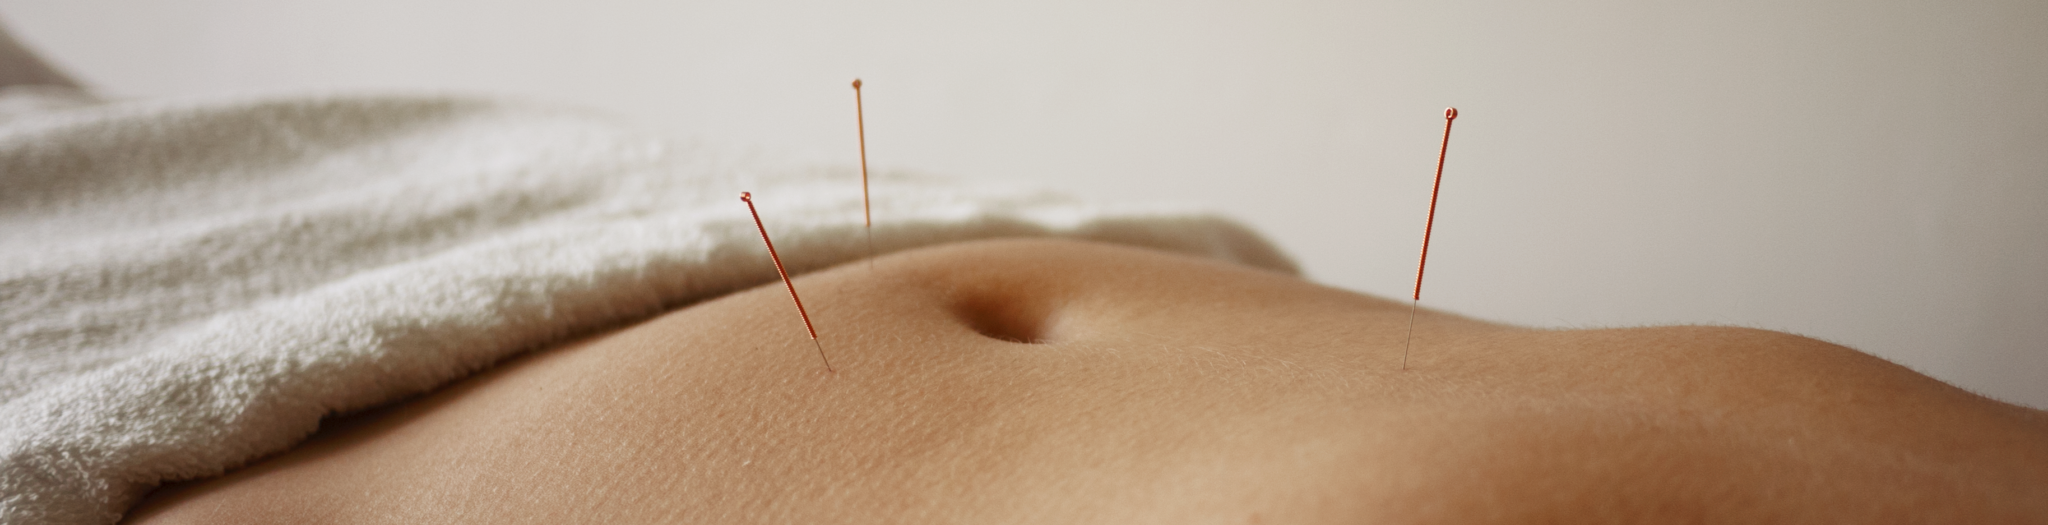 In de praktijk voor acupunctuur ziet u een buik met drie naalden rondom de buik